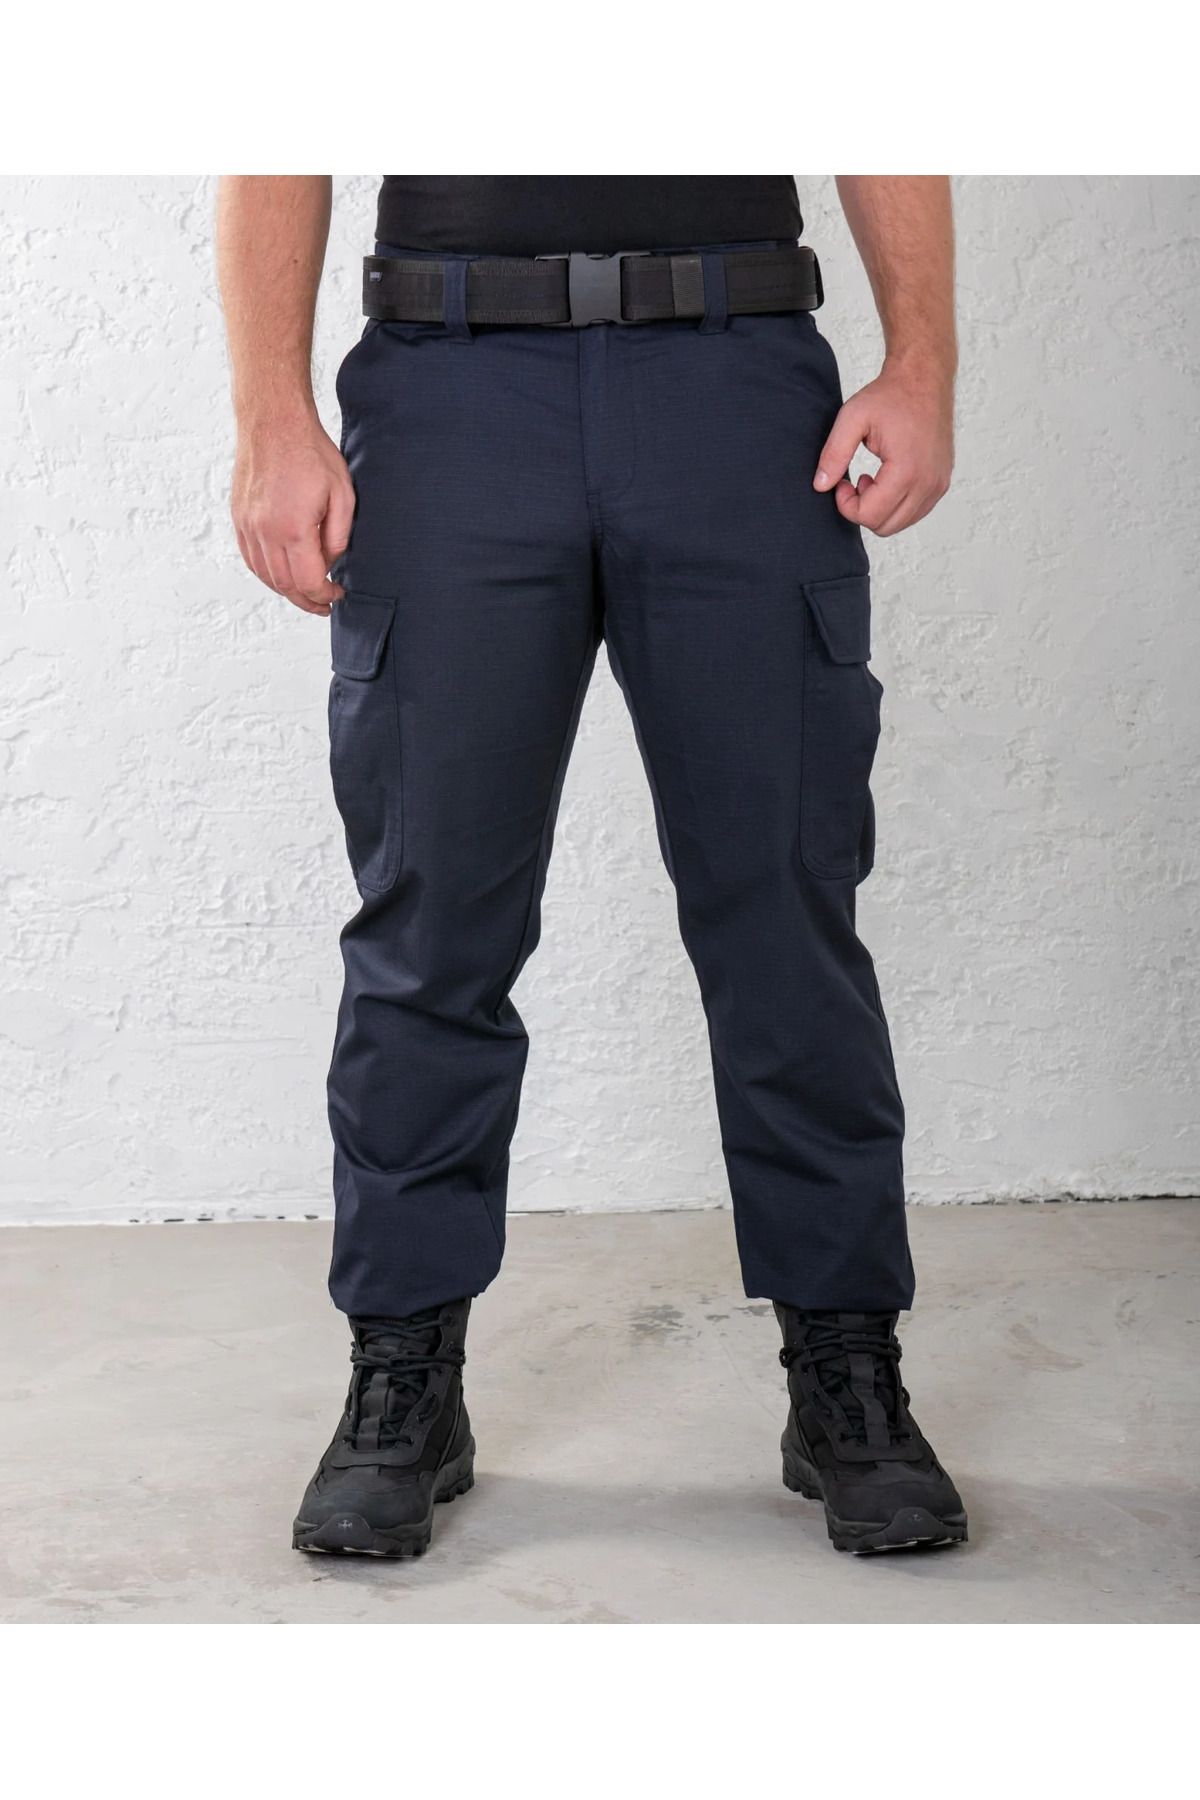 Mrc tactical Jandarma Asayiş Pantolon Solmaz Renk Orijinal Ürün Kıyafeti